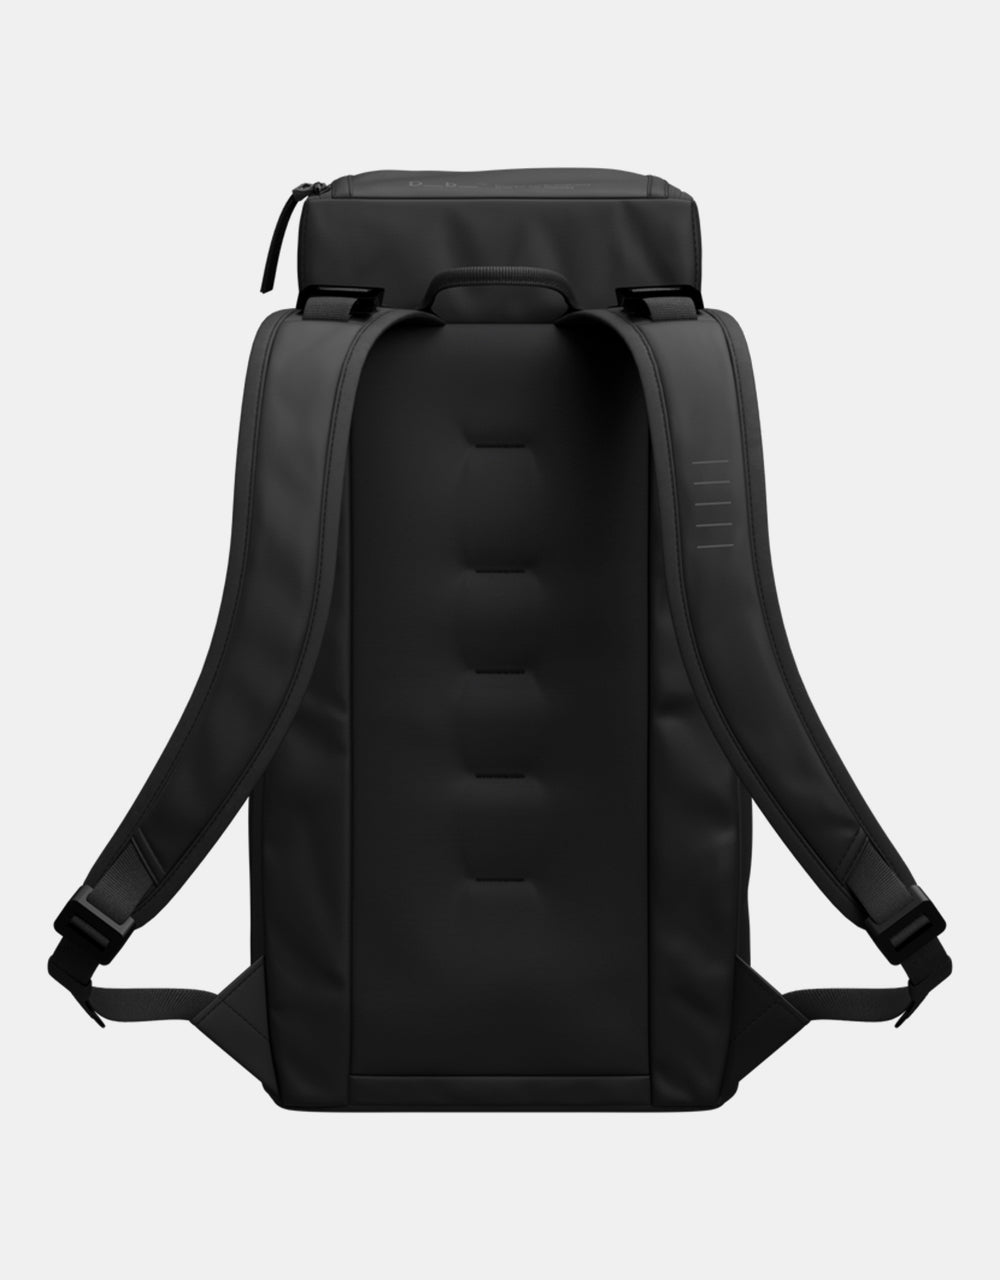 Db Hugger 20L Backpack - Black Out